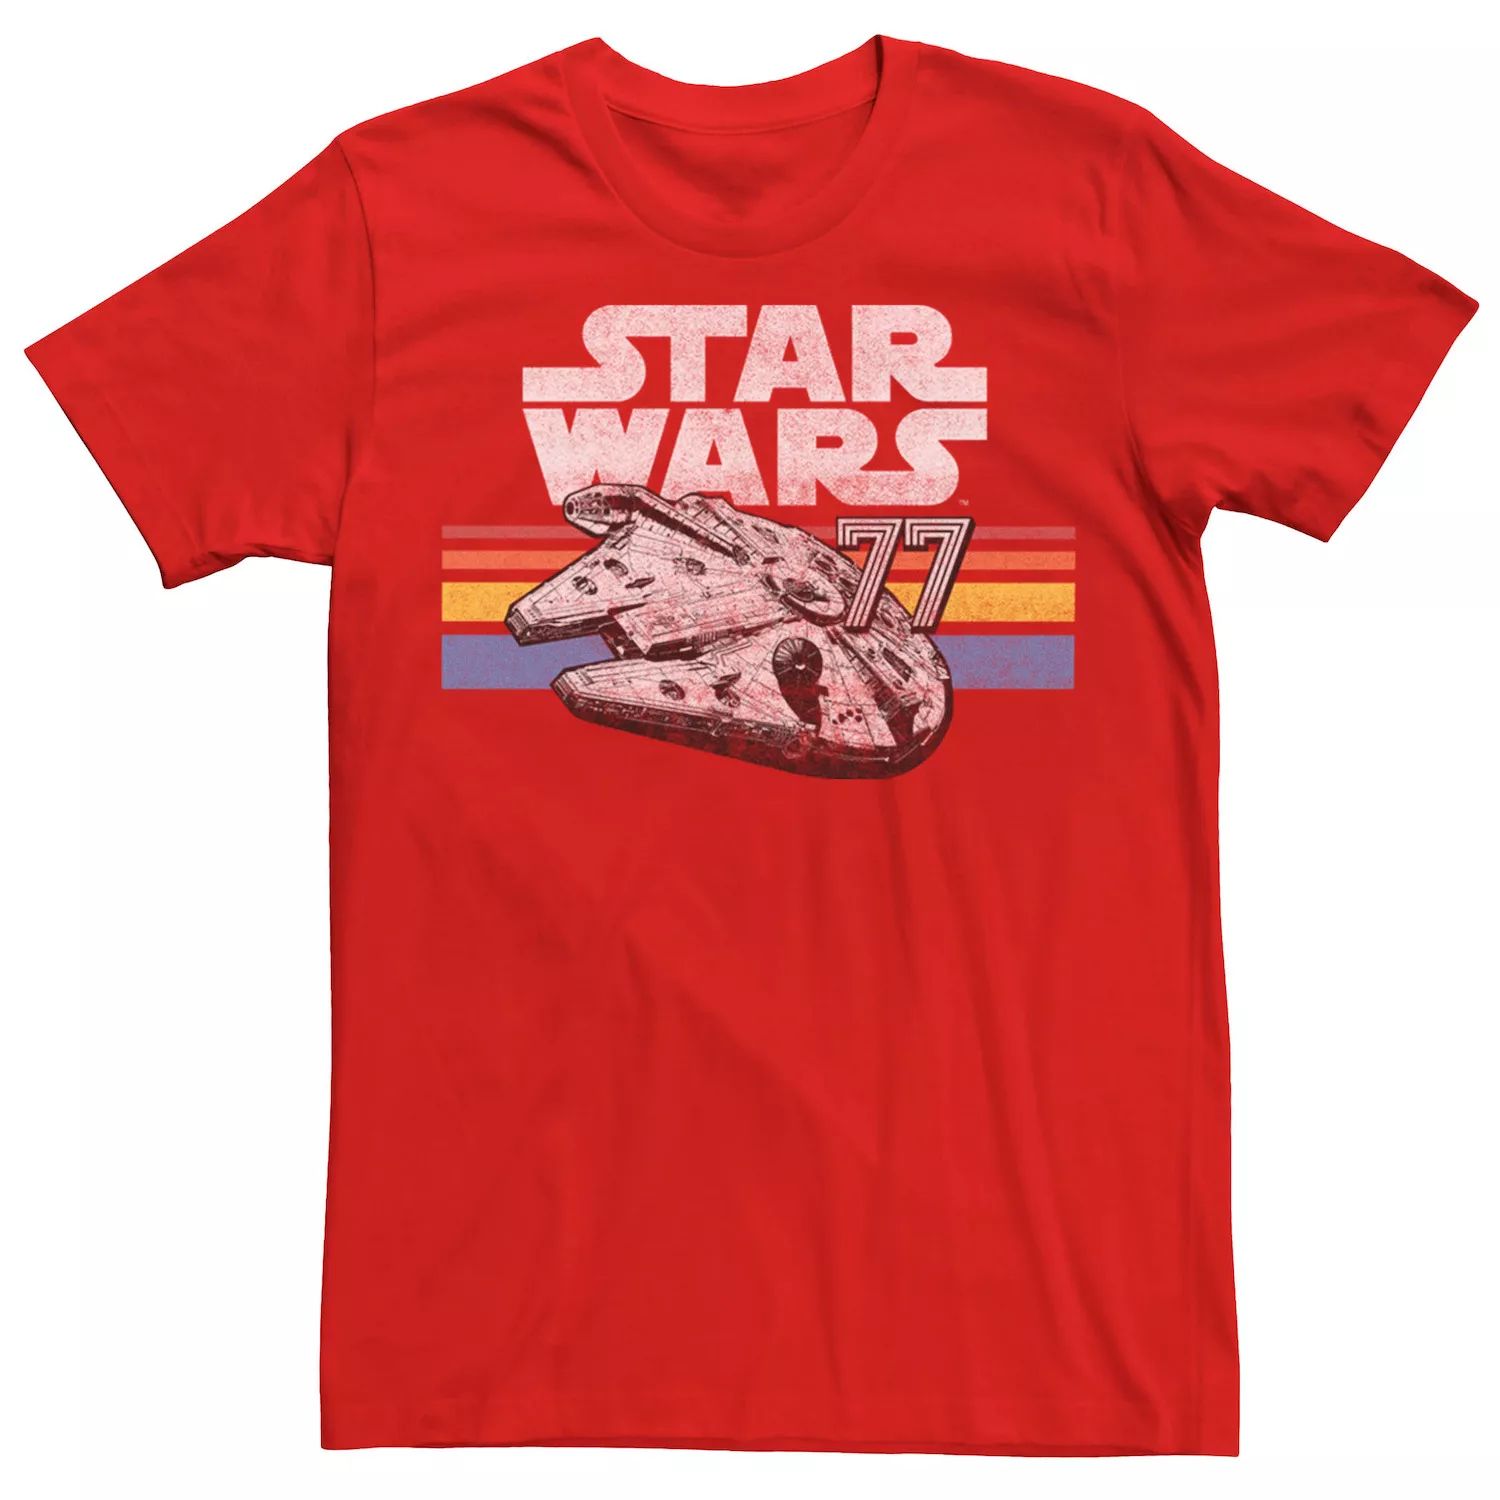 Мужская футболка с логотипом Millennium Falcon 77 Retro Lines Star Wars, красный